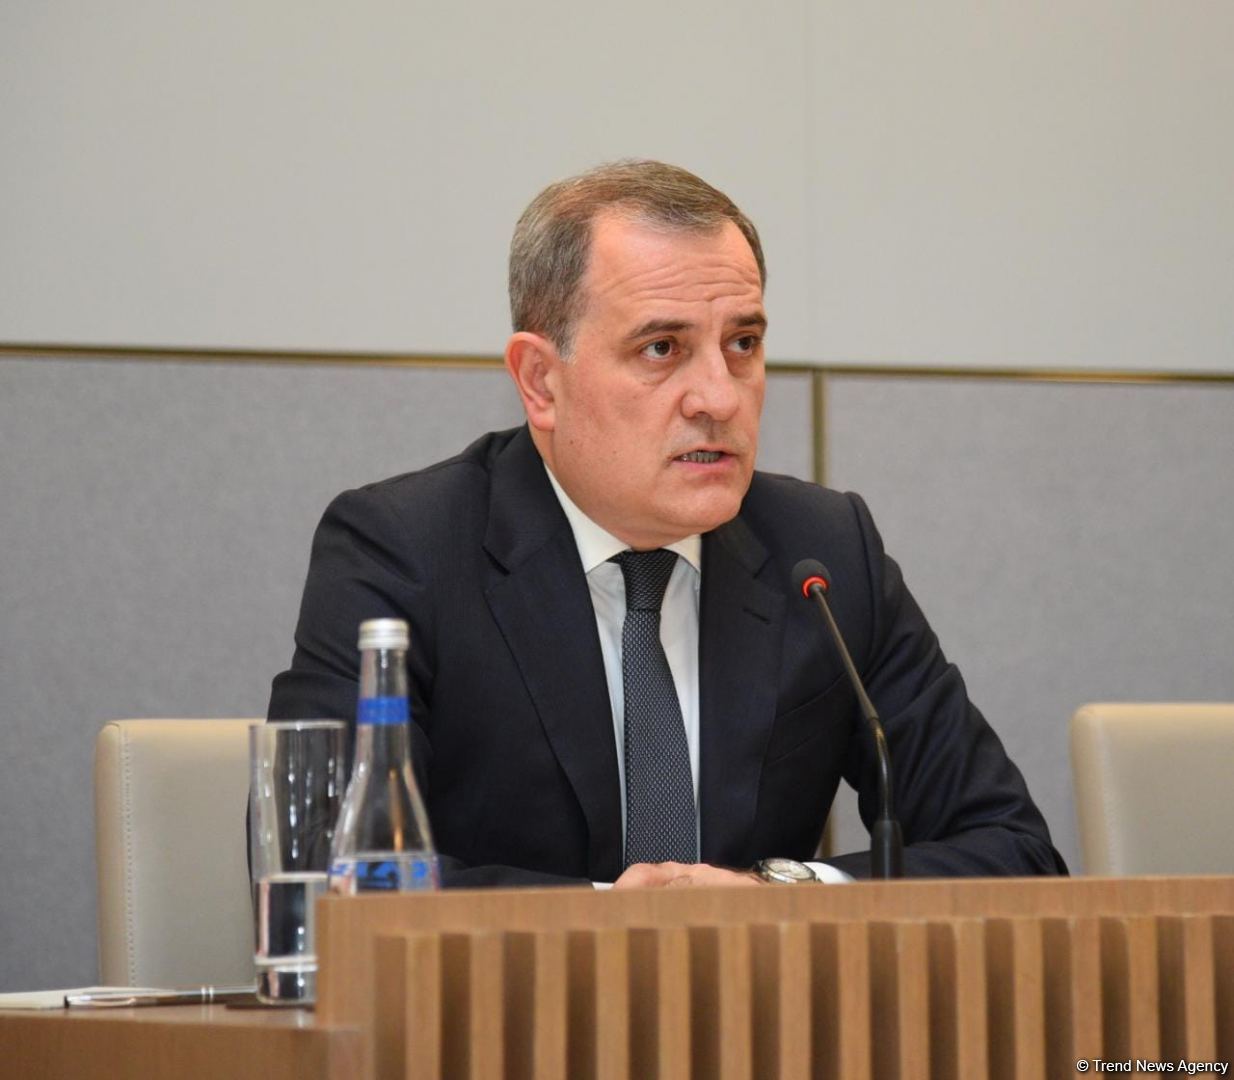 Сегодня будет возможность проговорить ряд вопросов по постконфликтному урегулированию между Азербайджаном и Арменией - Джейхун Байрамов